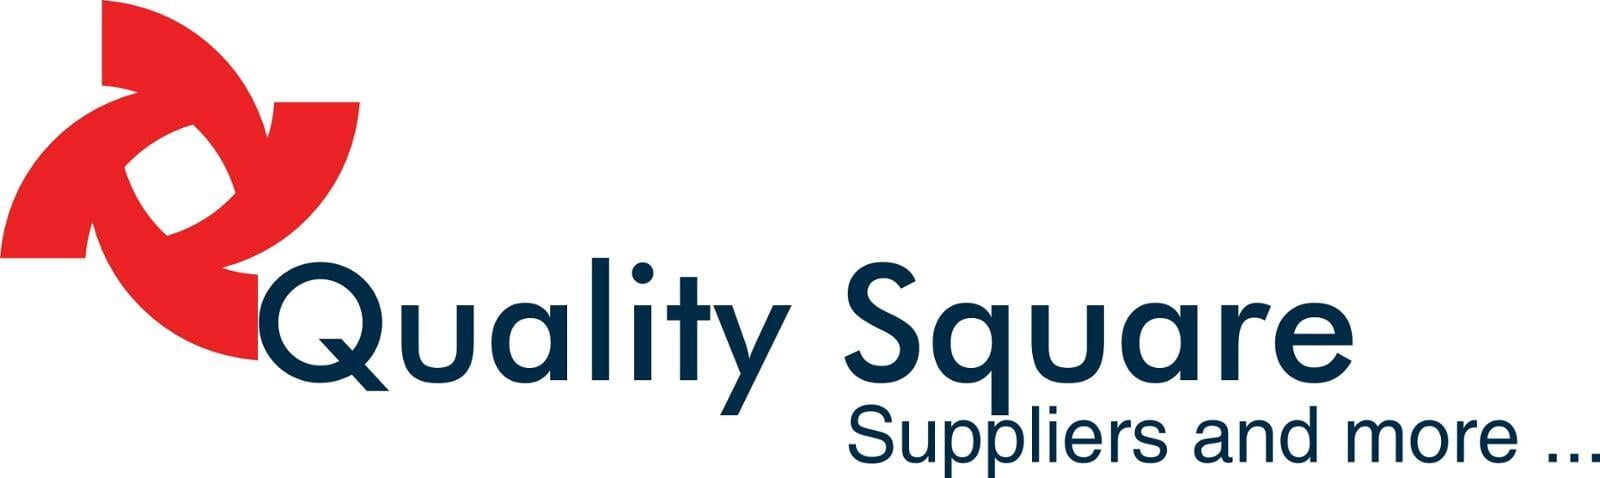 Quality Square